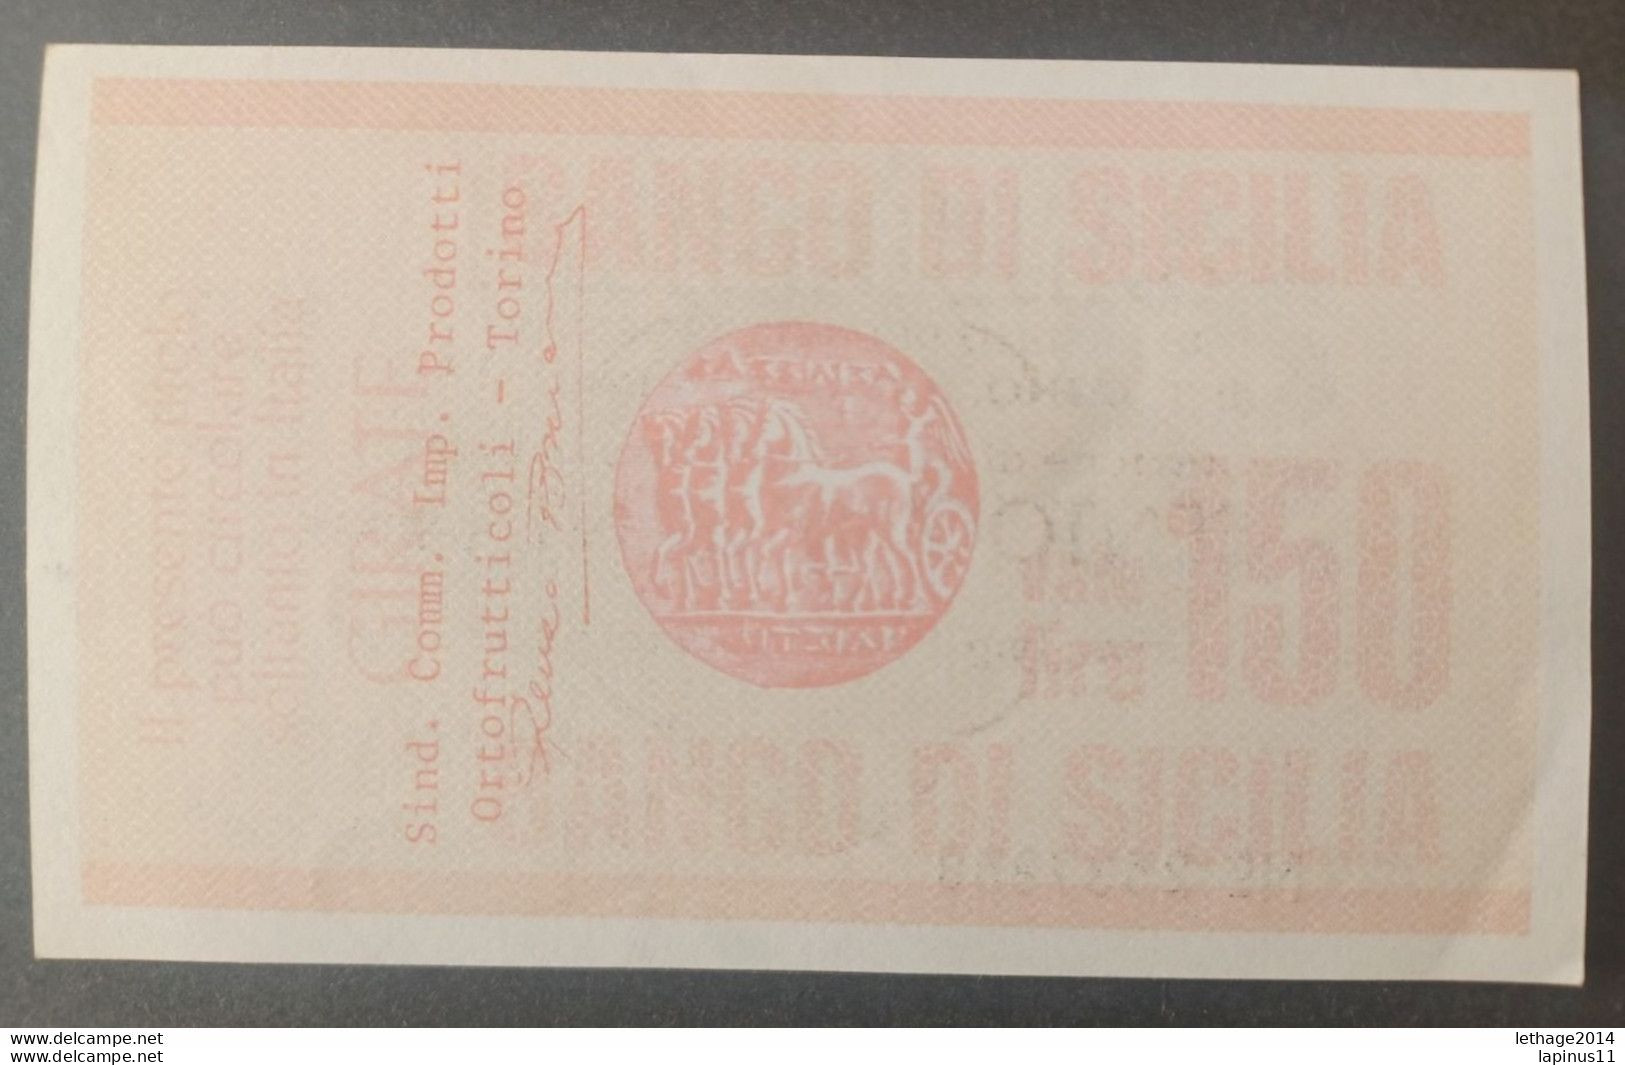 BANKNOTE ITALY MINICHECKS 150 LIRE BANCO DI SICILIA 1977 FDS - [10] Scheck Und Mini-Scheck